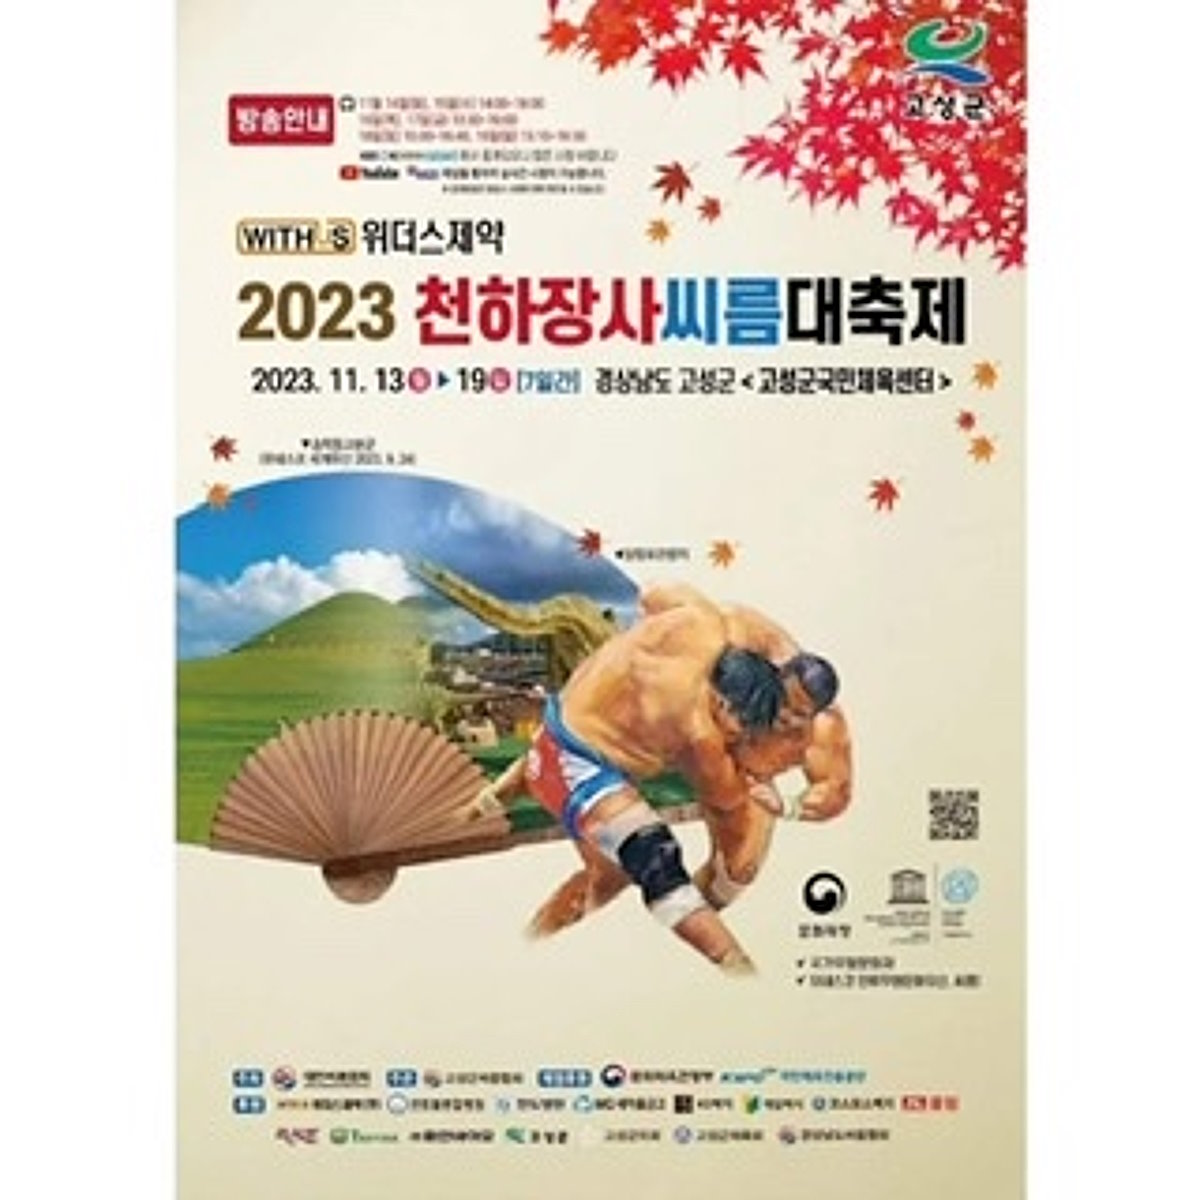 L’Italia al Ssireum Festival in Corea del Sud